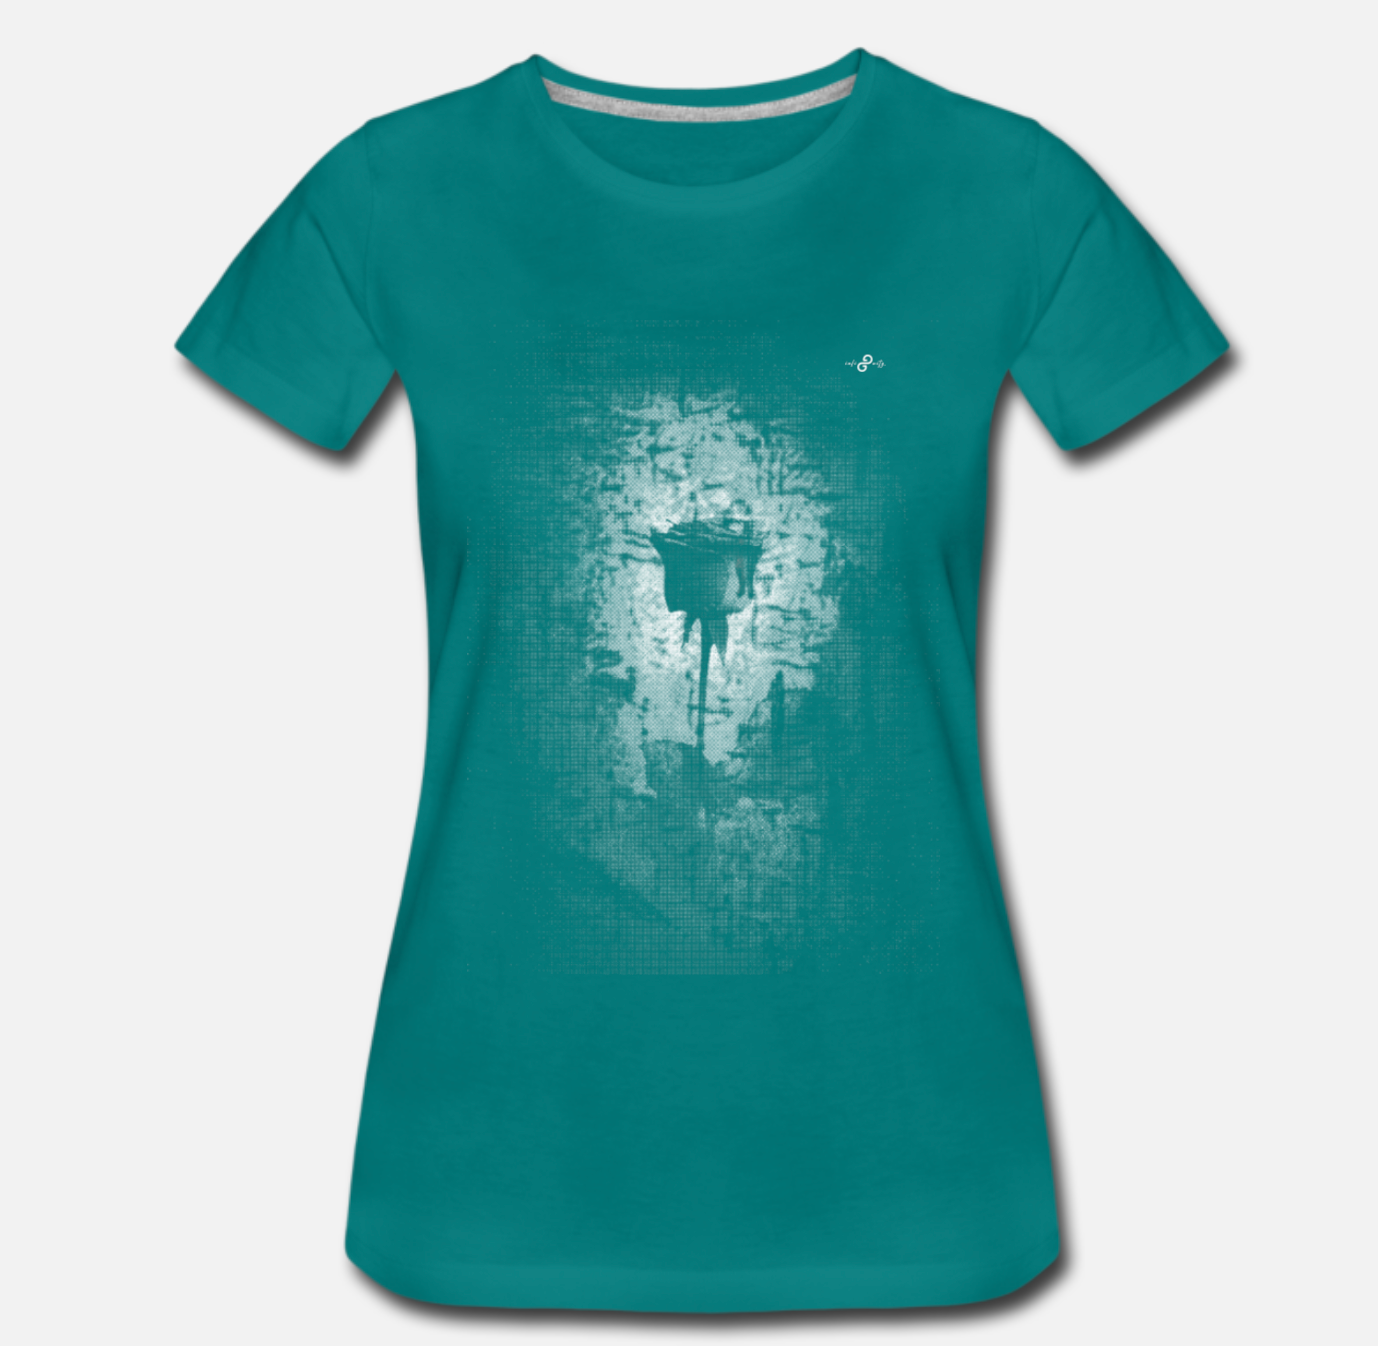 infinityG Frauen Shirt LIMITED EDITION 25 Stück weltweit "green_ROSE"